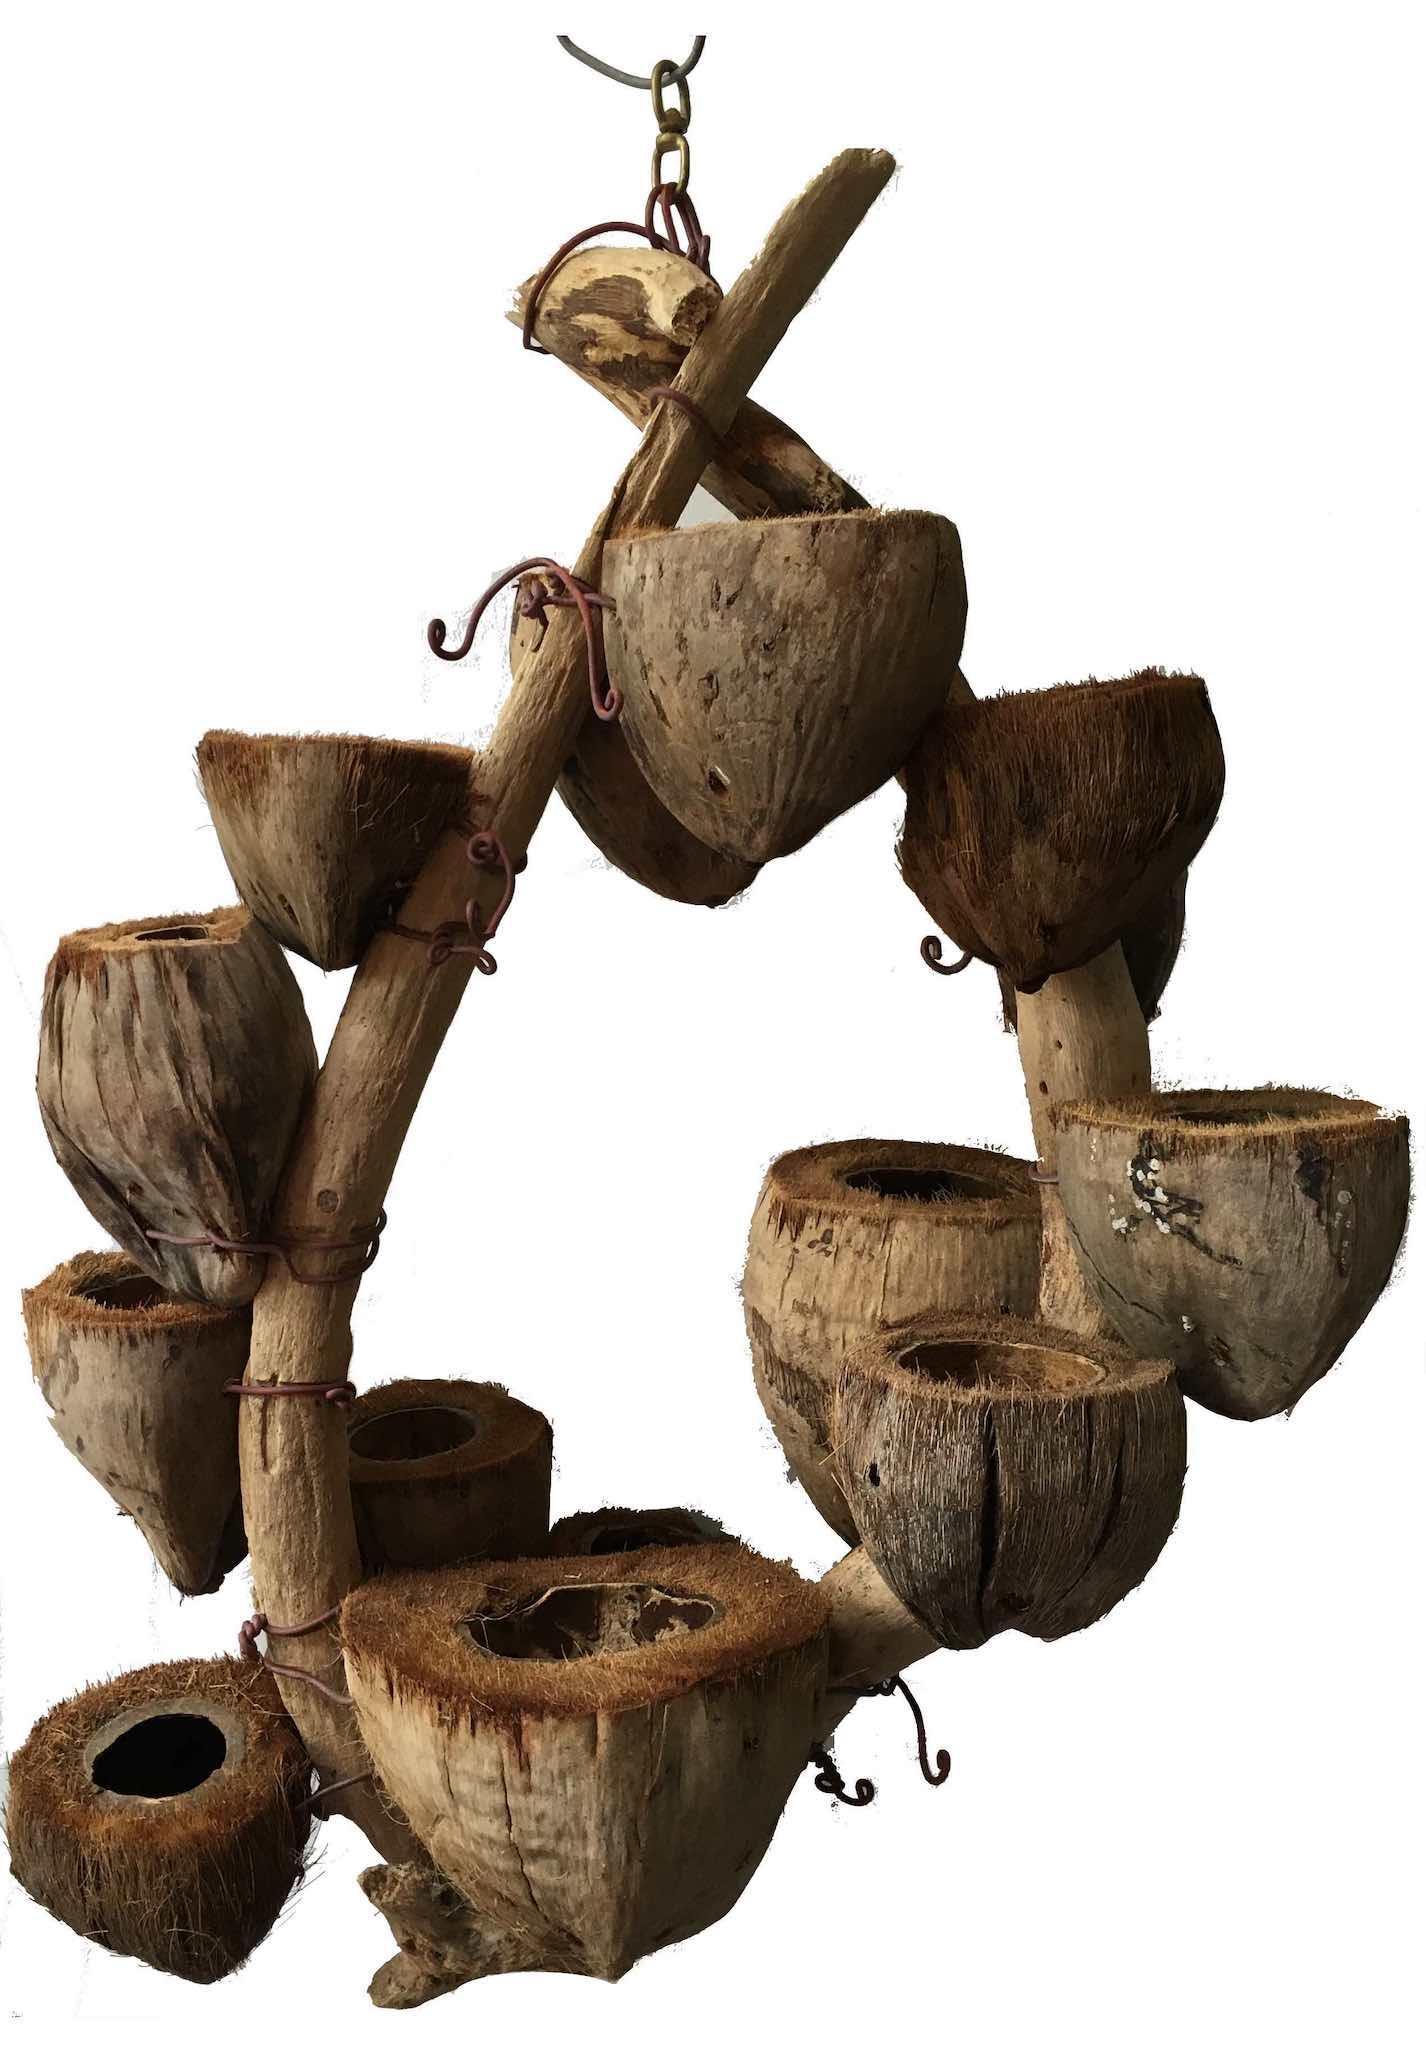 CocoDrifter - Kailua Beach Driftwood and coconut husk hanging planter sculpture